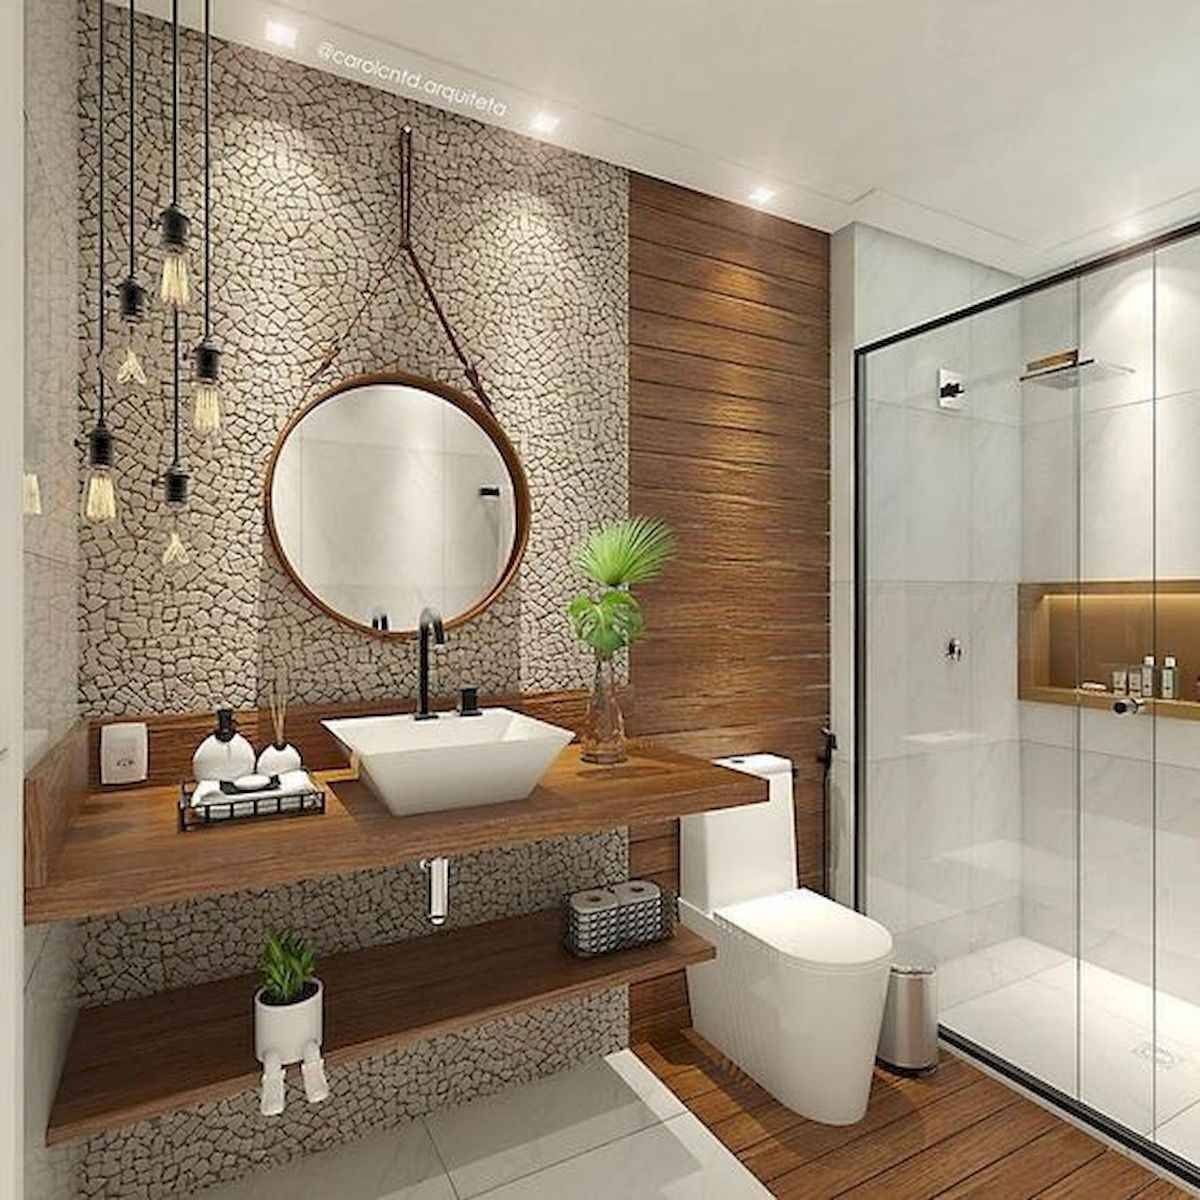 Модная современная ванная: фото, дизайн интерьер, в квартире, в доме, маленькая и большая.. как обустроить ванную комнату функционально, комфортно и стильно. интерьер современной ванной комнаты: выбор планировки, материалов, сантехники, идеи дизайна